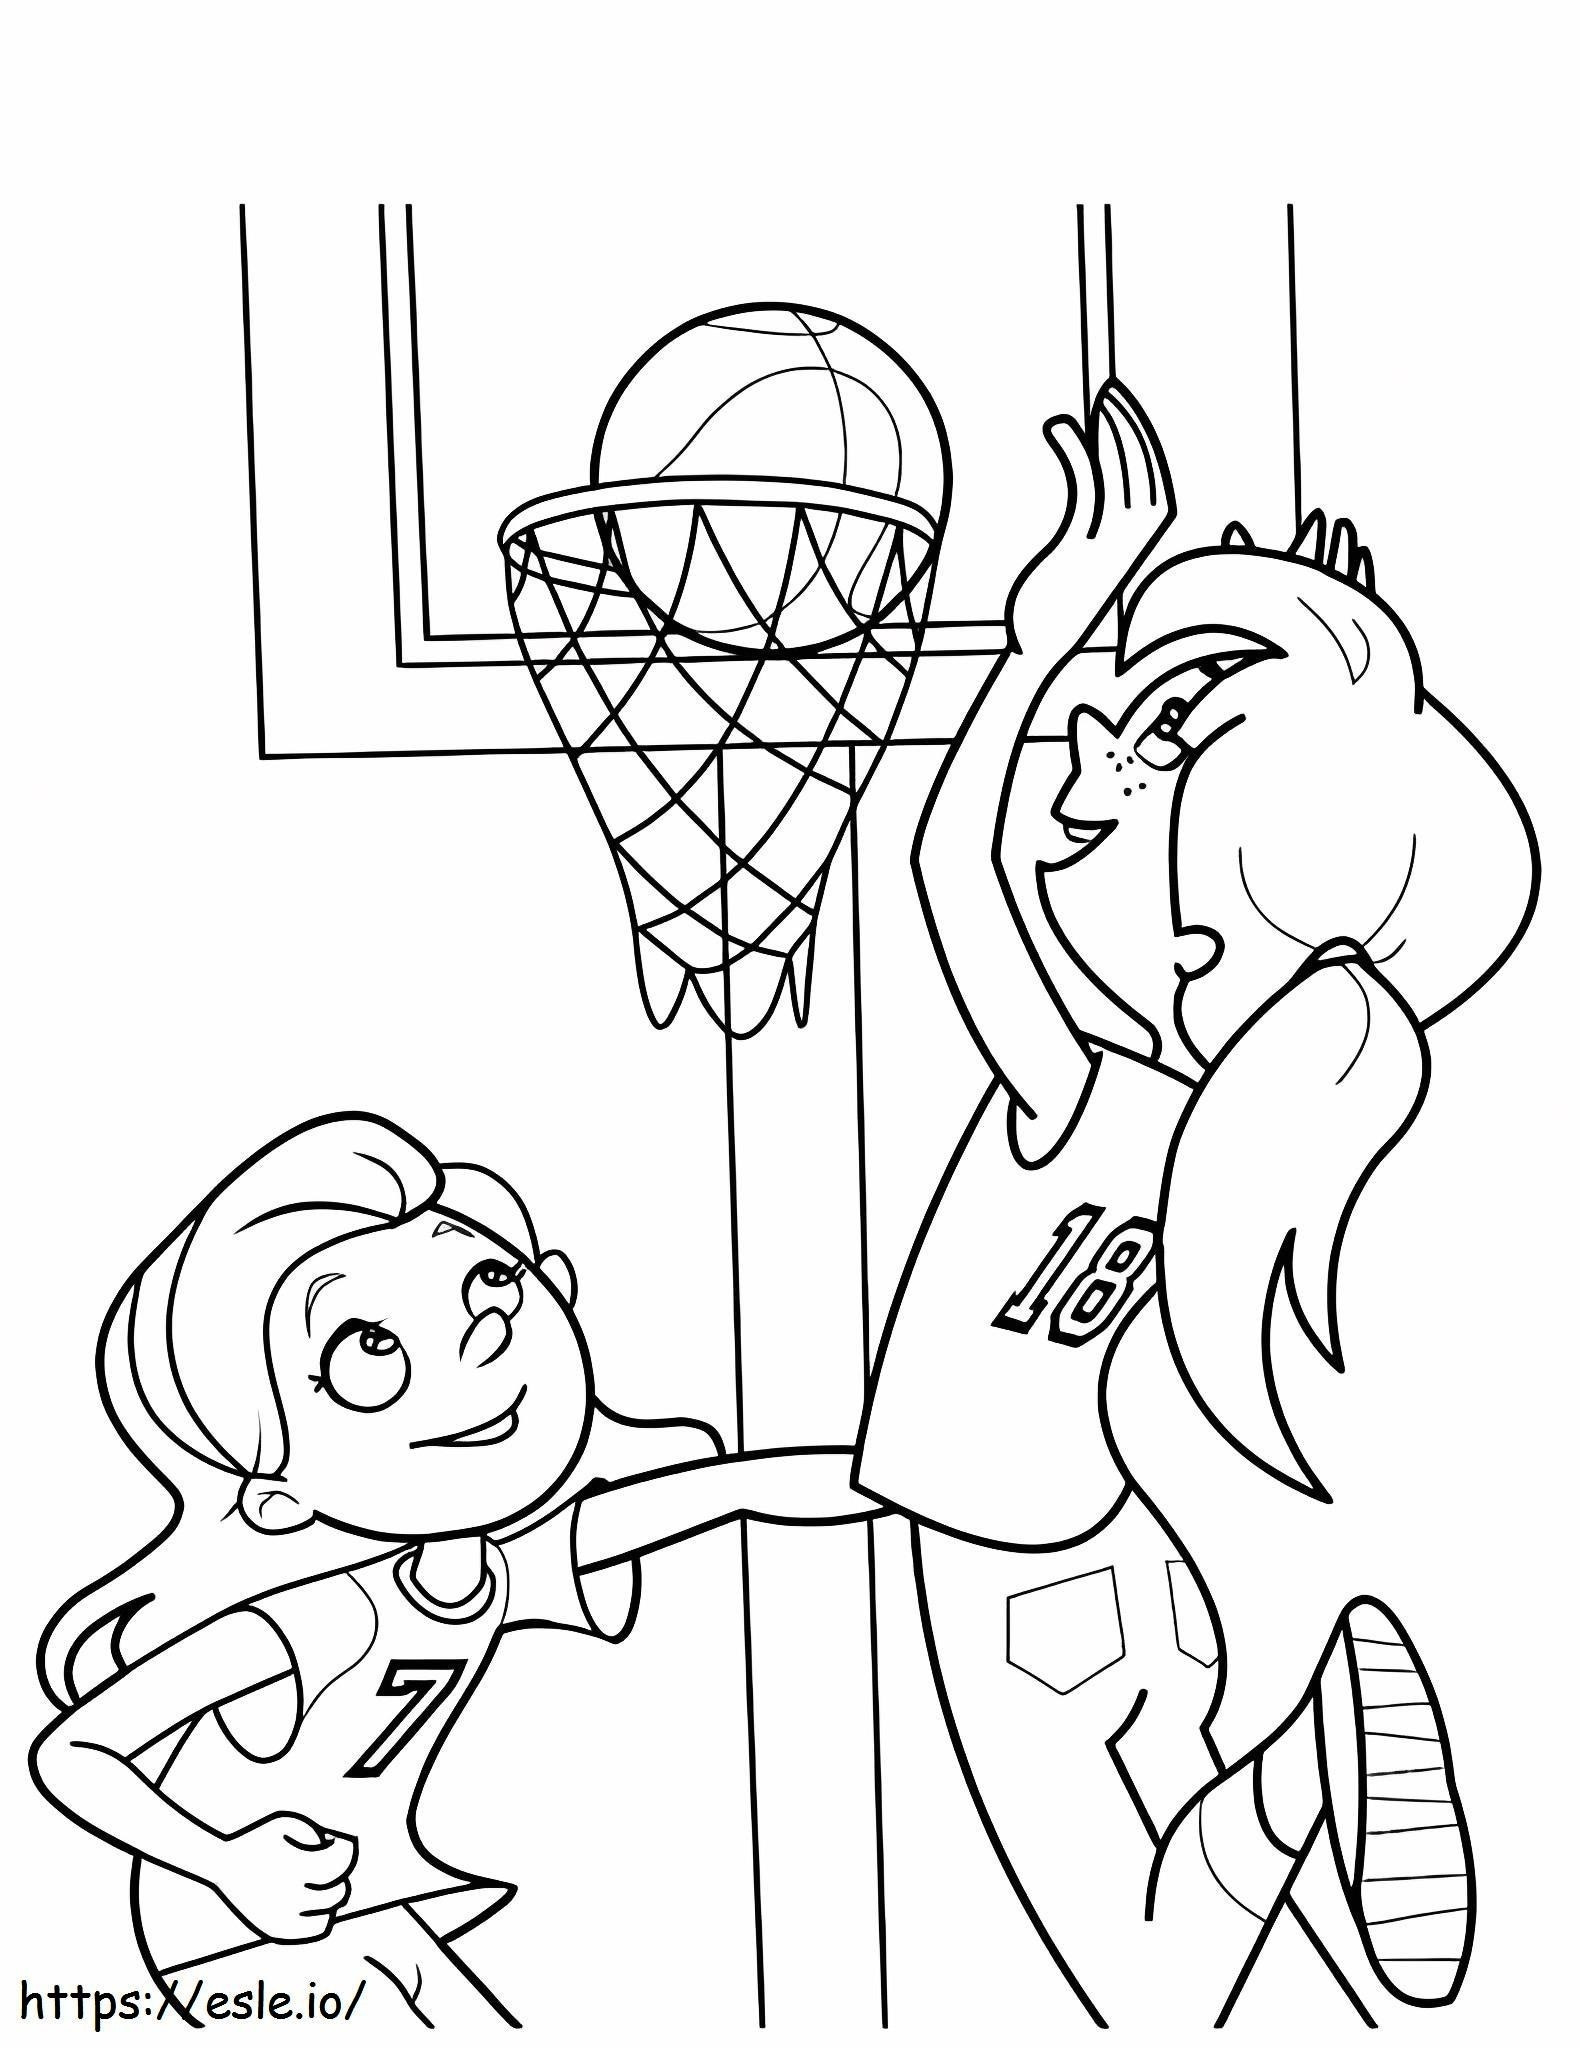 Zwei Mädchen spielen Basketball ausmalbilder